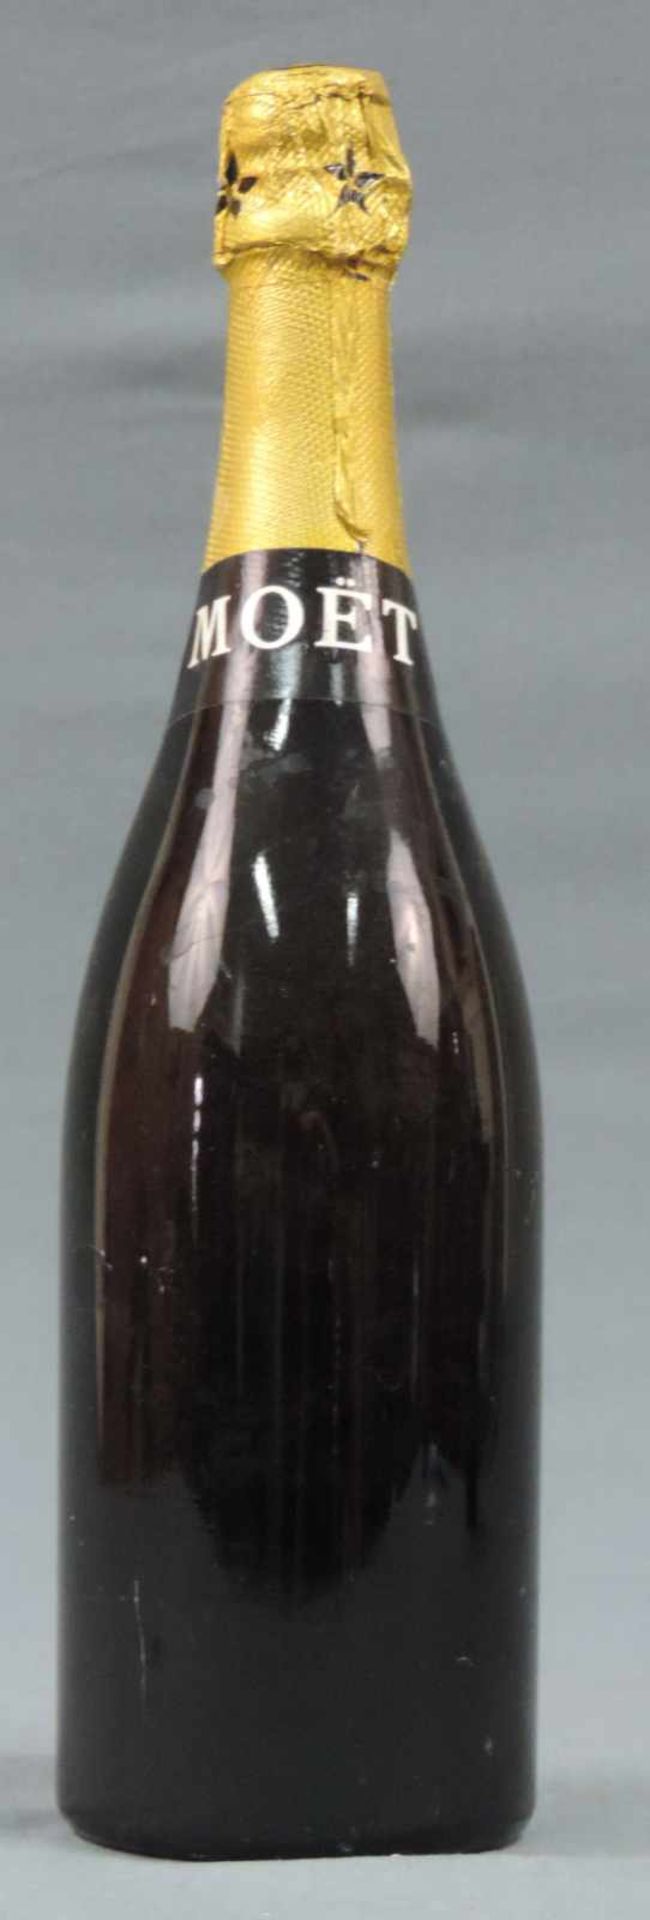 1964 Moet & Chandon Champagne Brut Imperial. Eine ganze Flasche Campangner Frankreich weiß. - Bild 5 aus 6